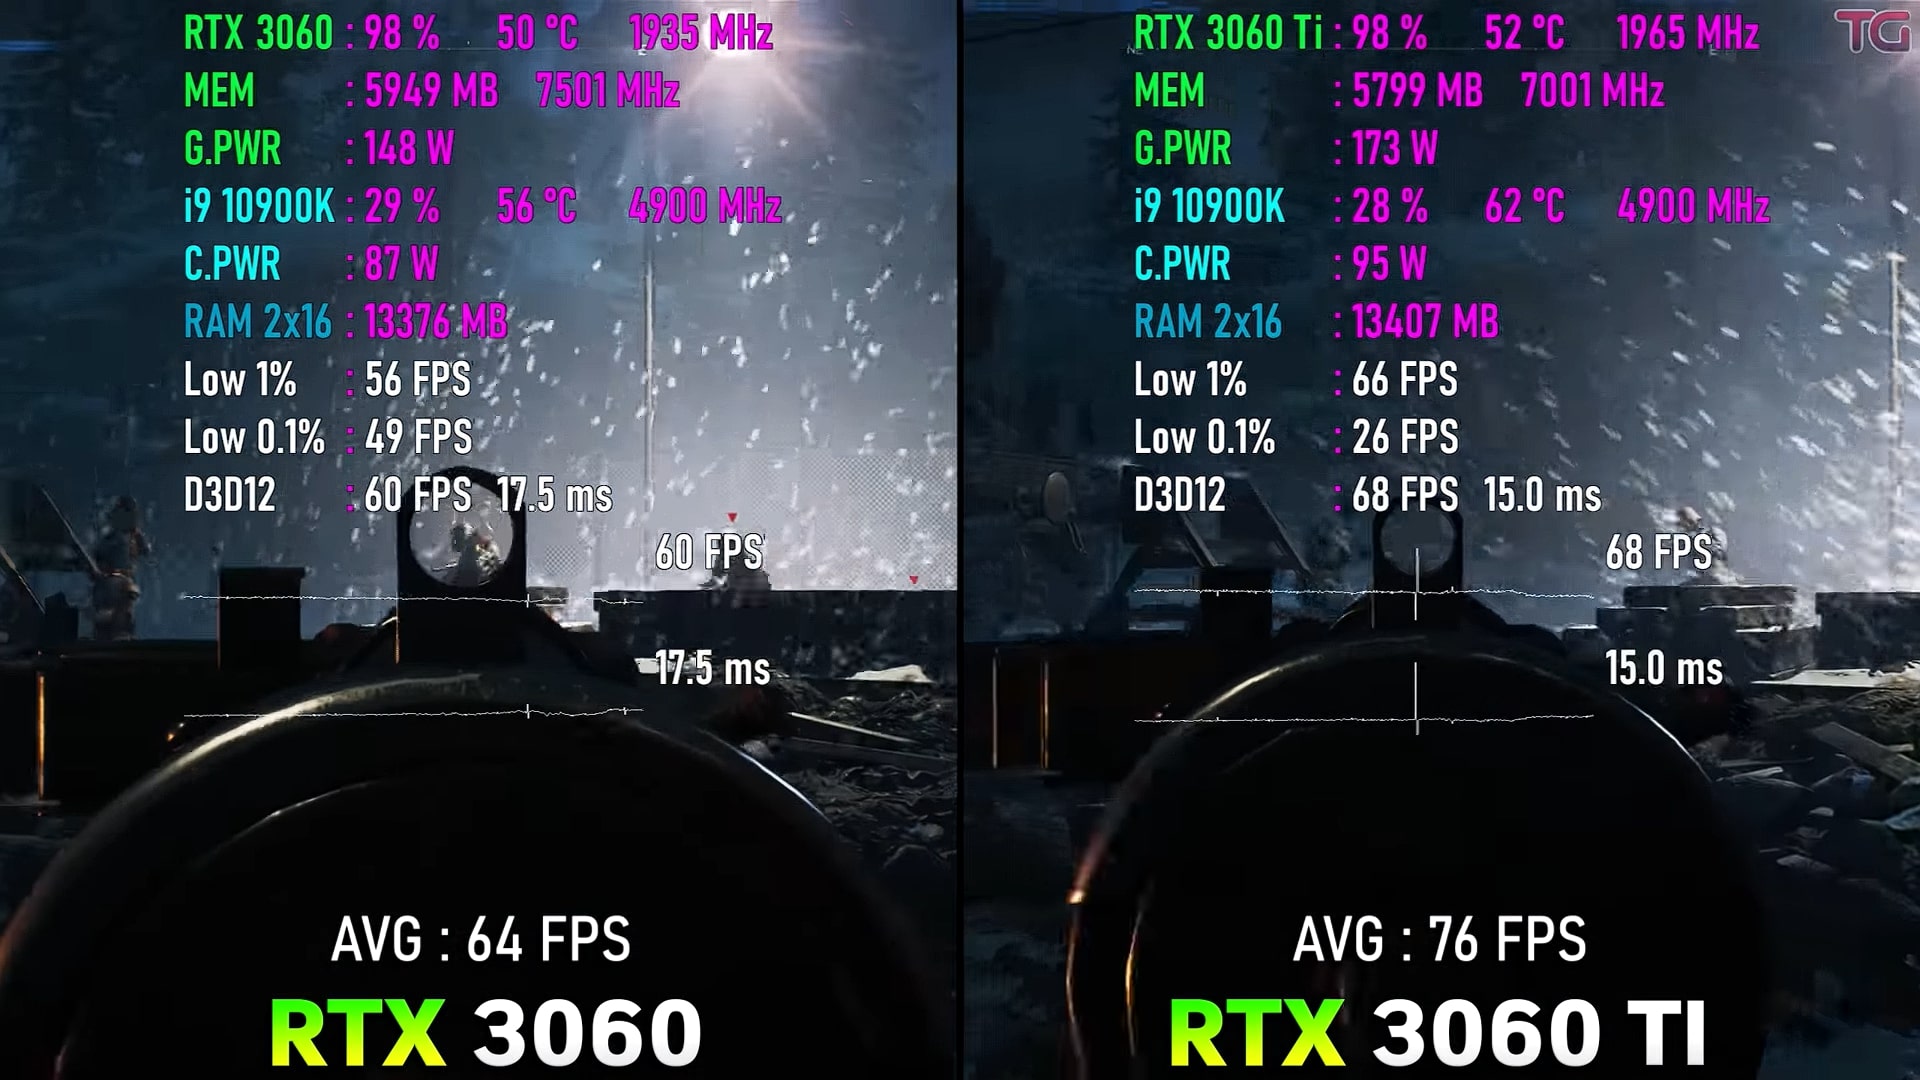 RTX 3060 Vs. RTX 3060 Ti comparision on Battlefield V